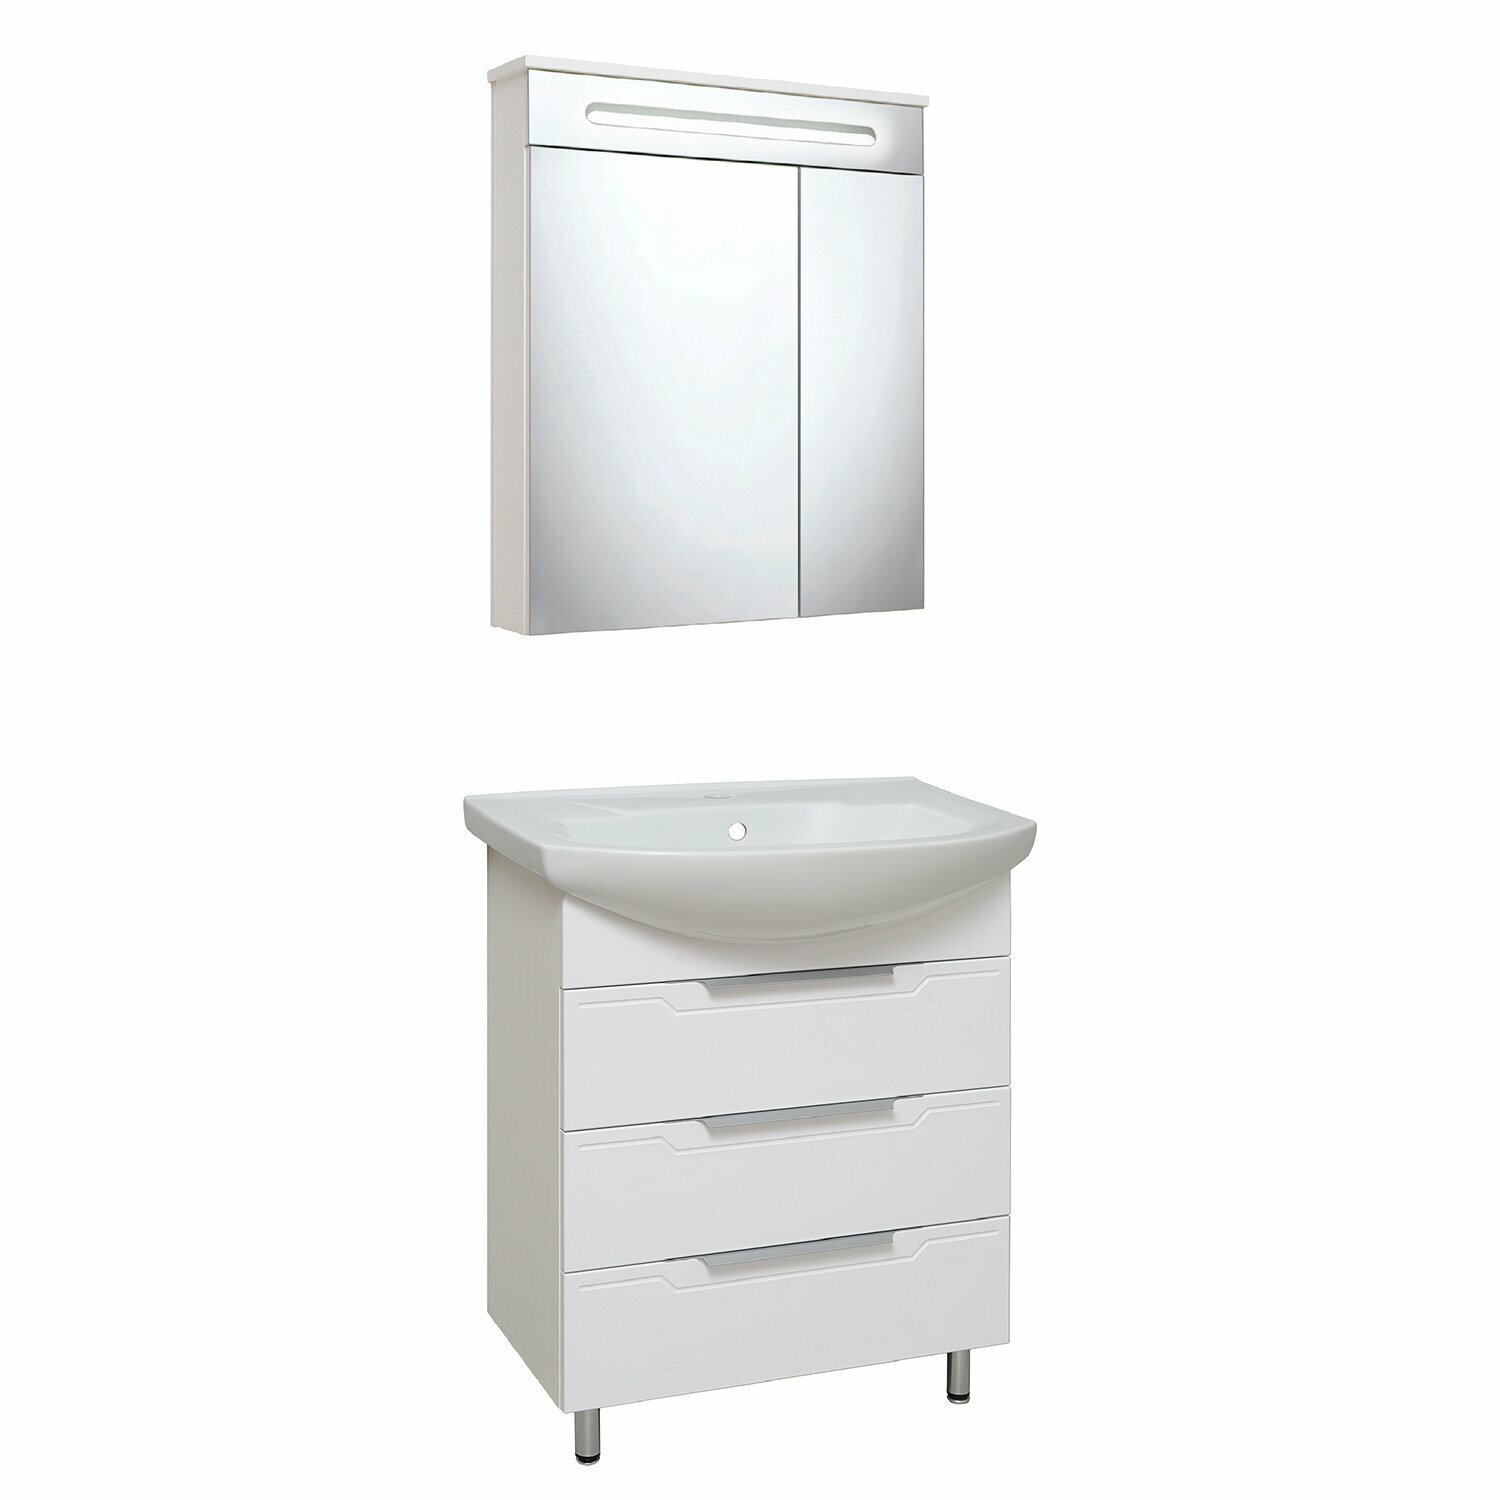 Мебель для ванной / Runo / Верона 65 с зеркалом Парма 60 / тумба с раковиной Элеганс 65 / шкаф для ванной / зеркало для ванной